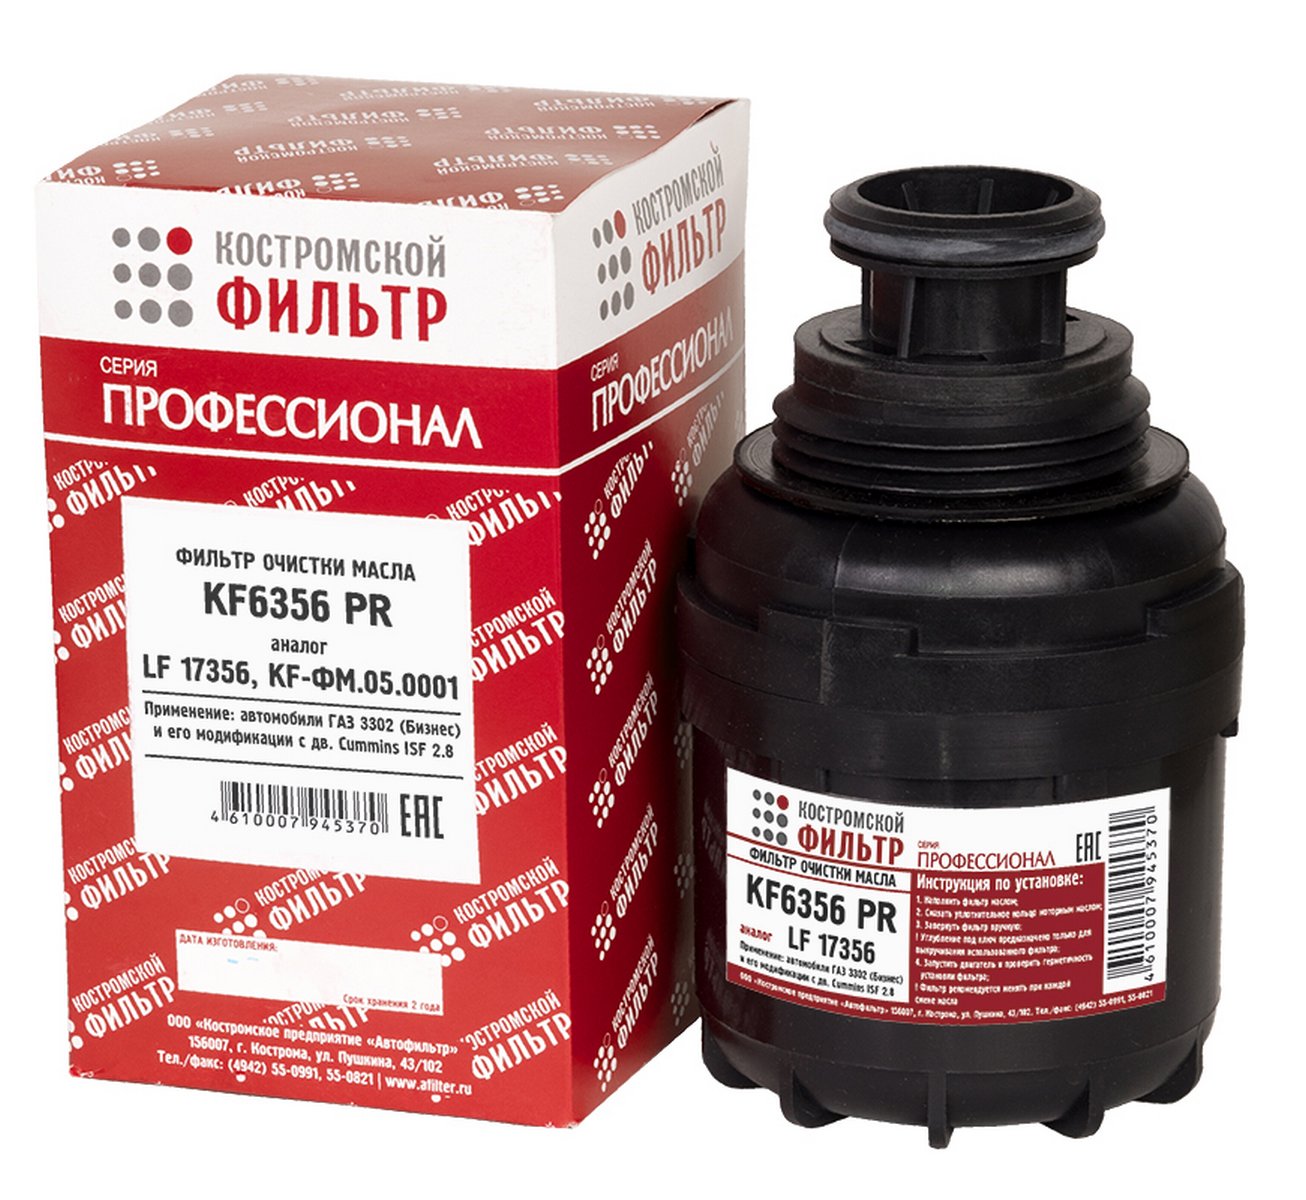 KF6356 PR Фильтр очистки масла KF6356 PR (аналог-LF17356, KF-ФМ.05.0001) Профессионал  Костромской фильтр